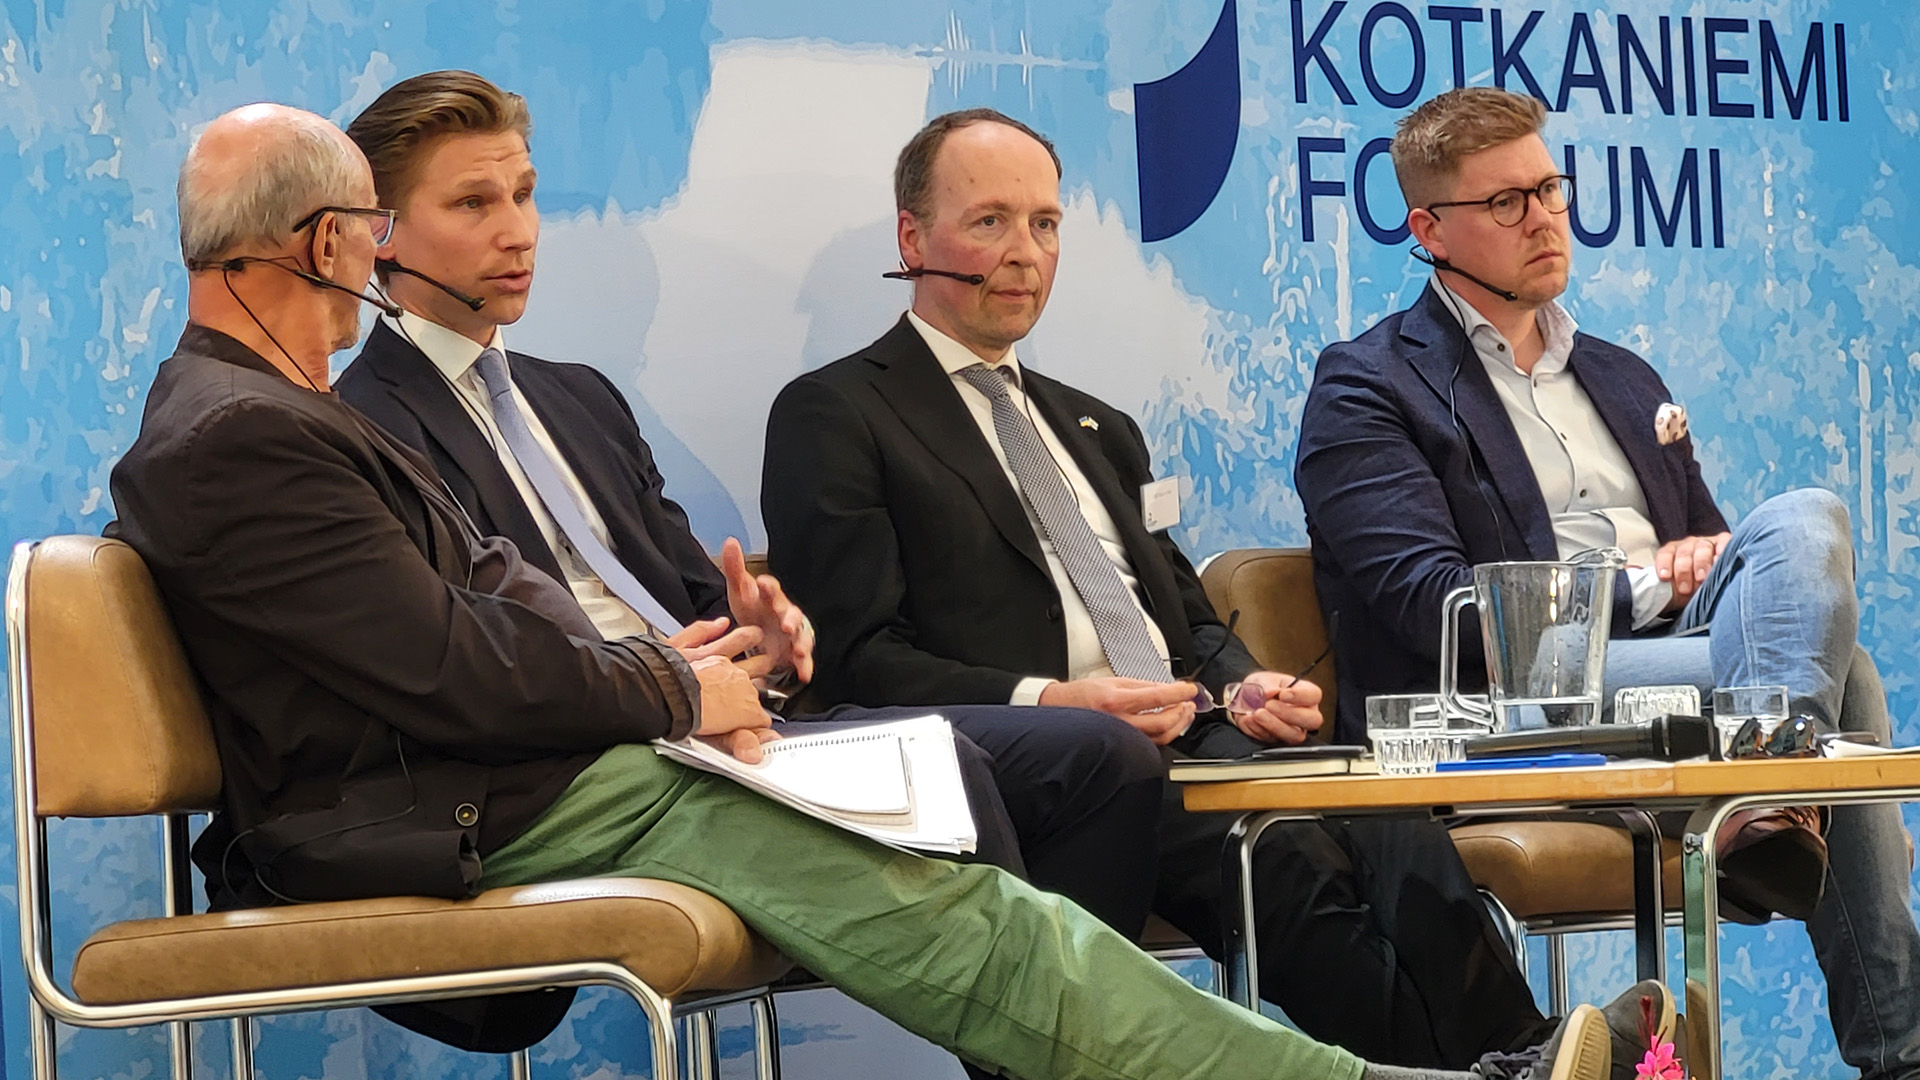 Kotkaniemi-foorumissa korkeatasoista ja laaja-alaista keskustelua Suomen turvallisuuspolitiikasta  